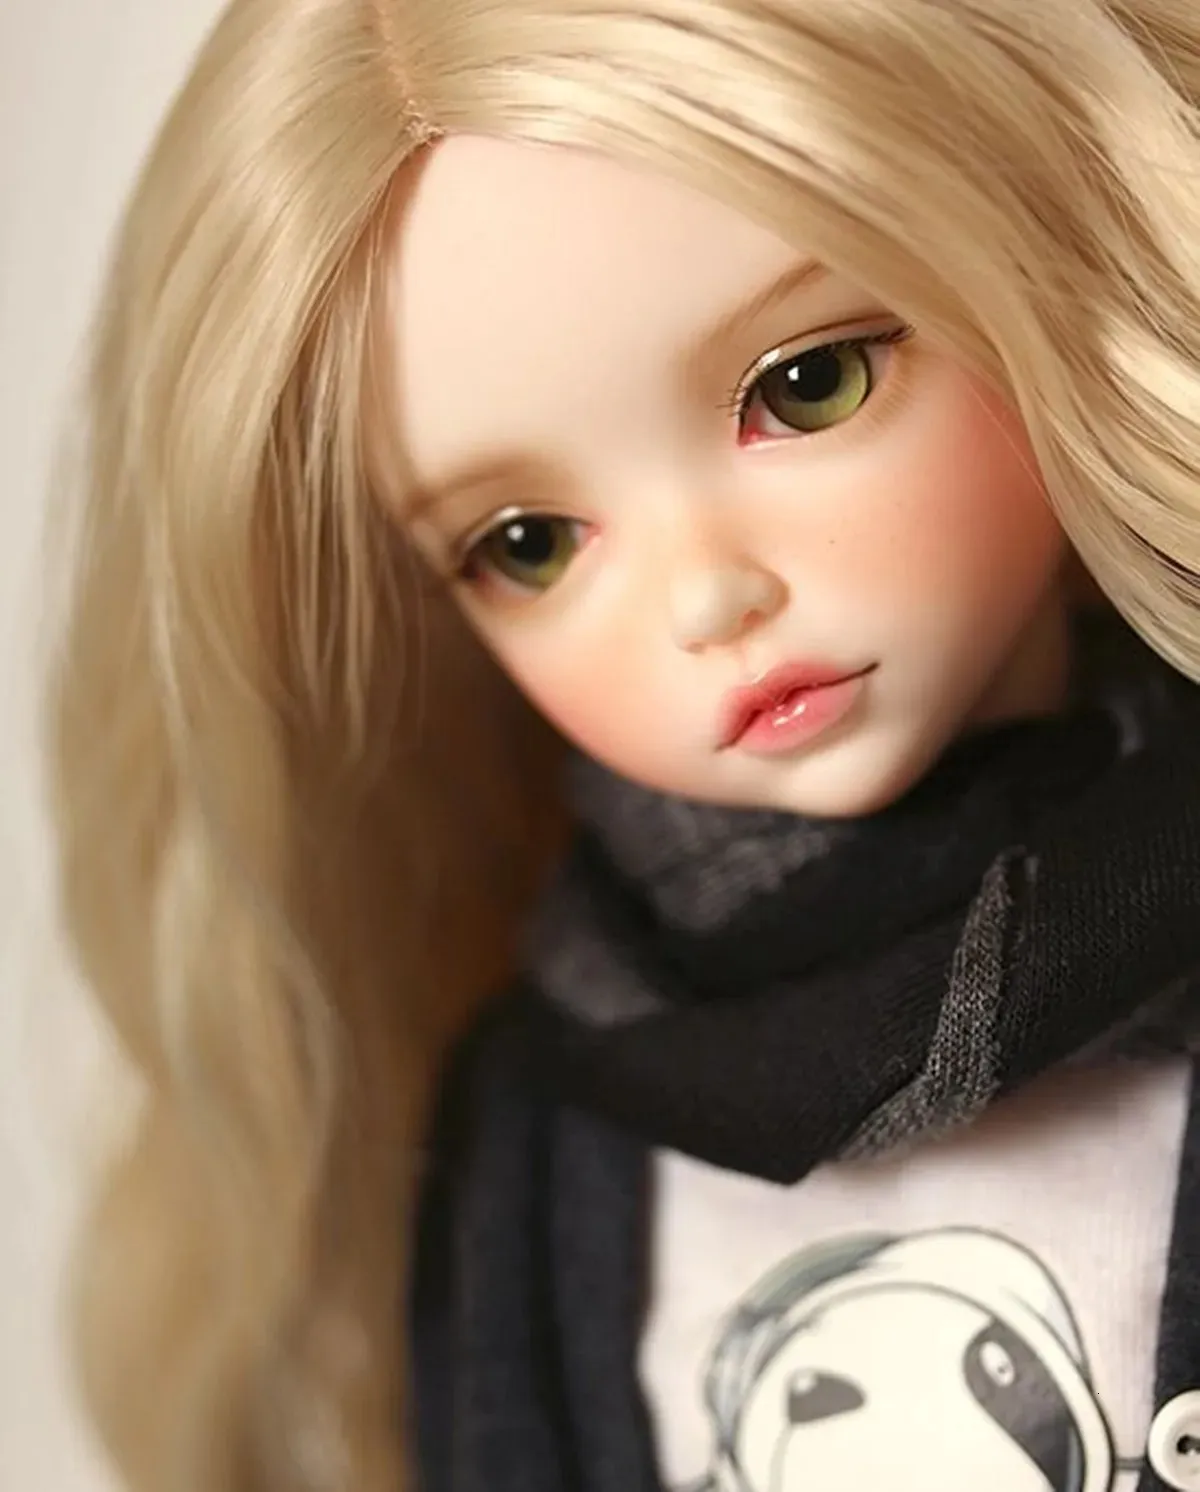 16LonnieジョイントBJD SD人形ファッションかわいい女の子のおもちゃミニスポットメイクアッププレミアム樹脂240131